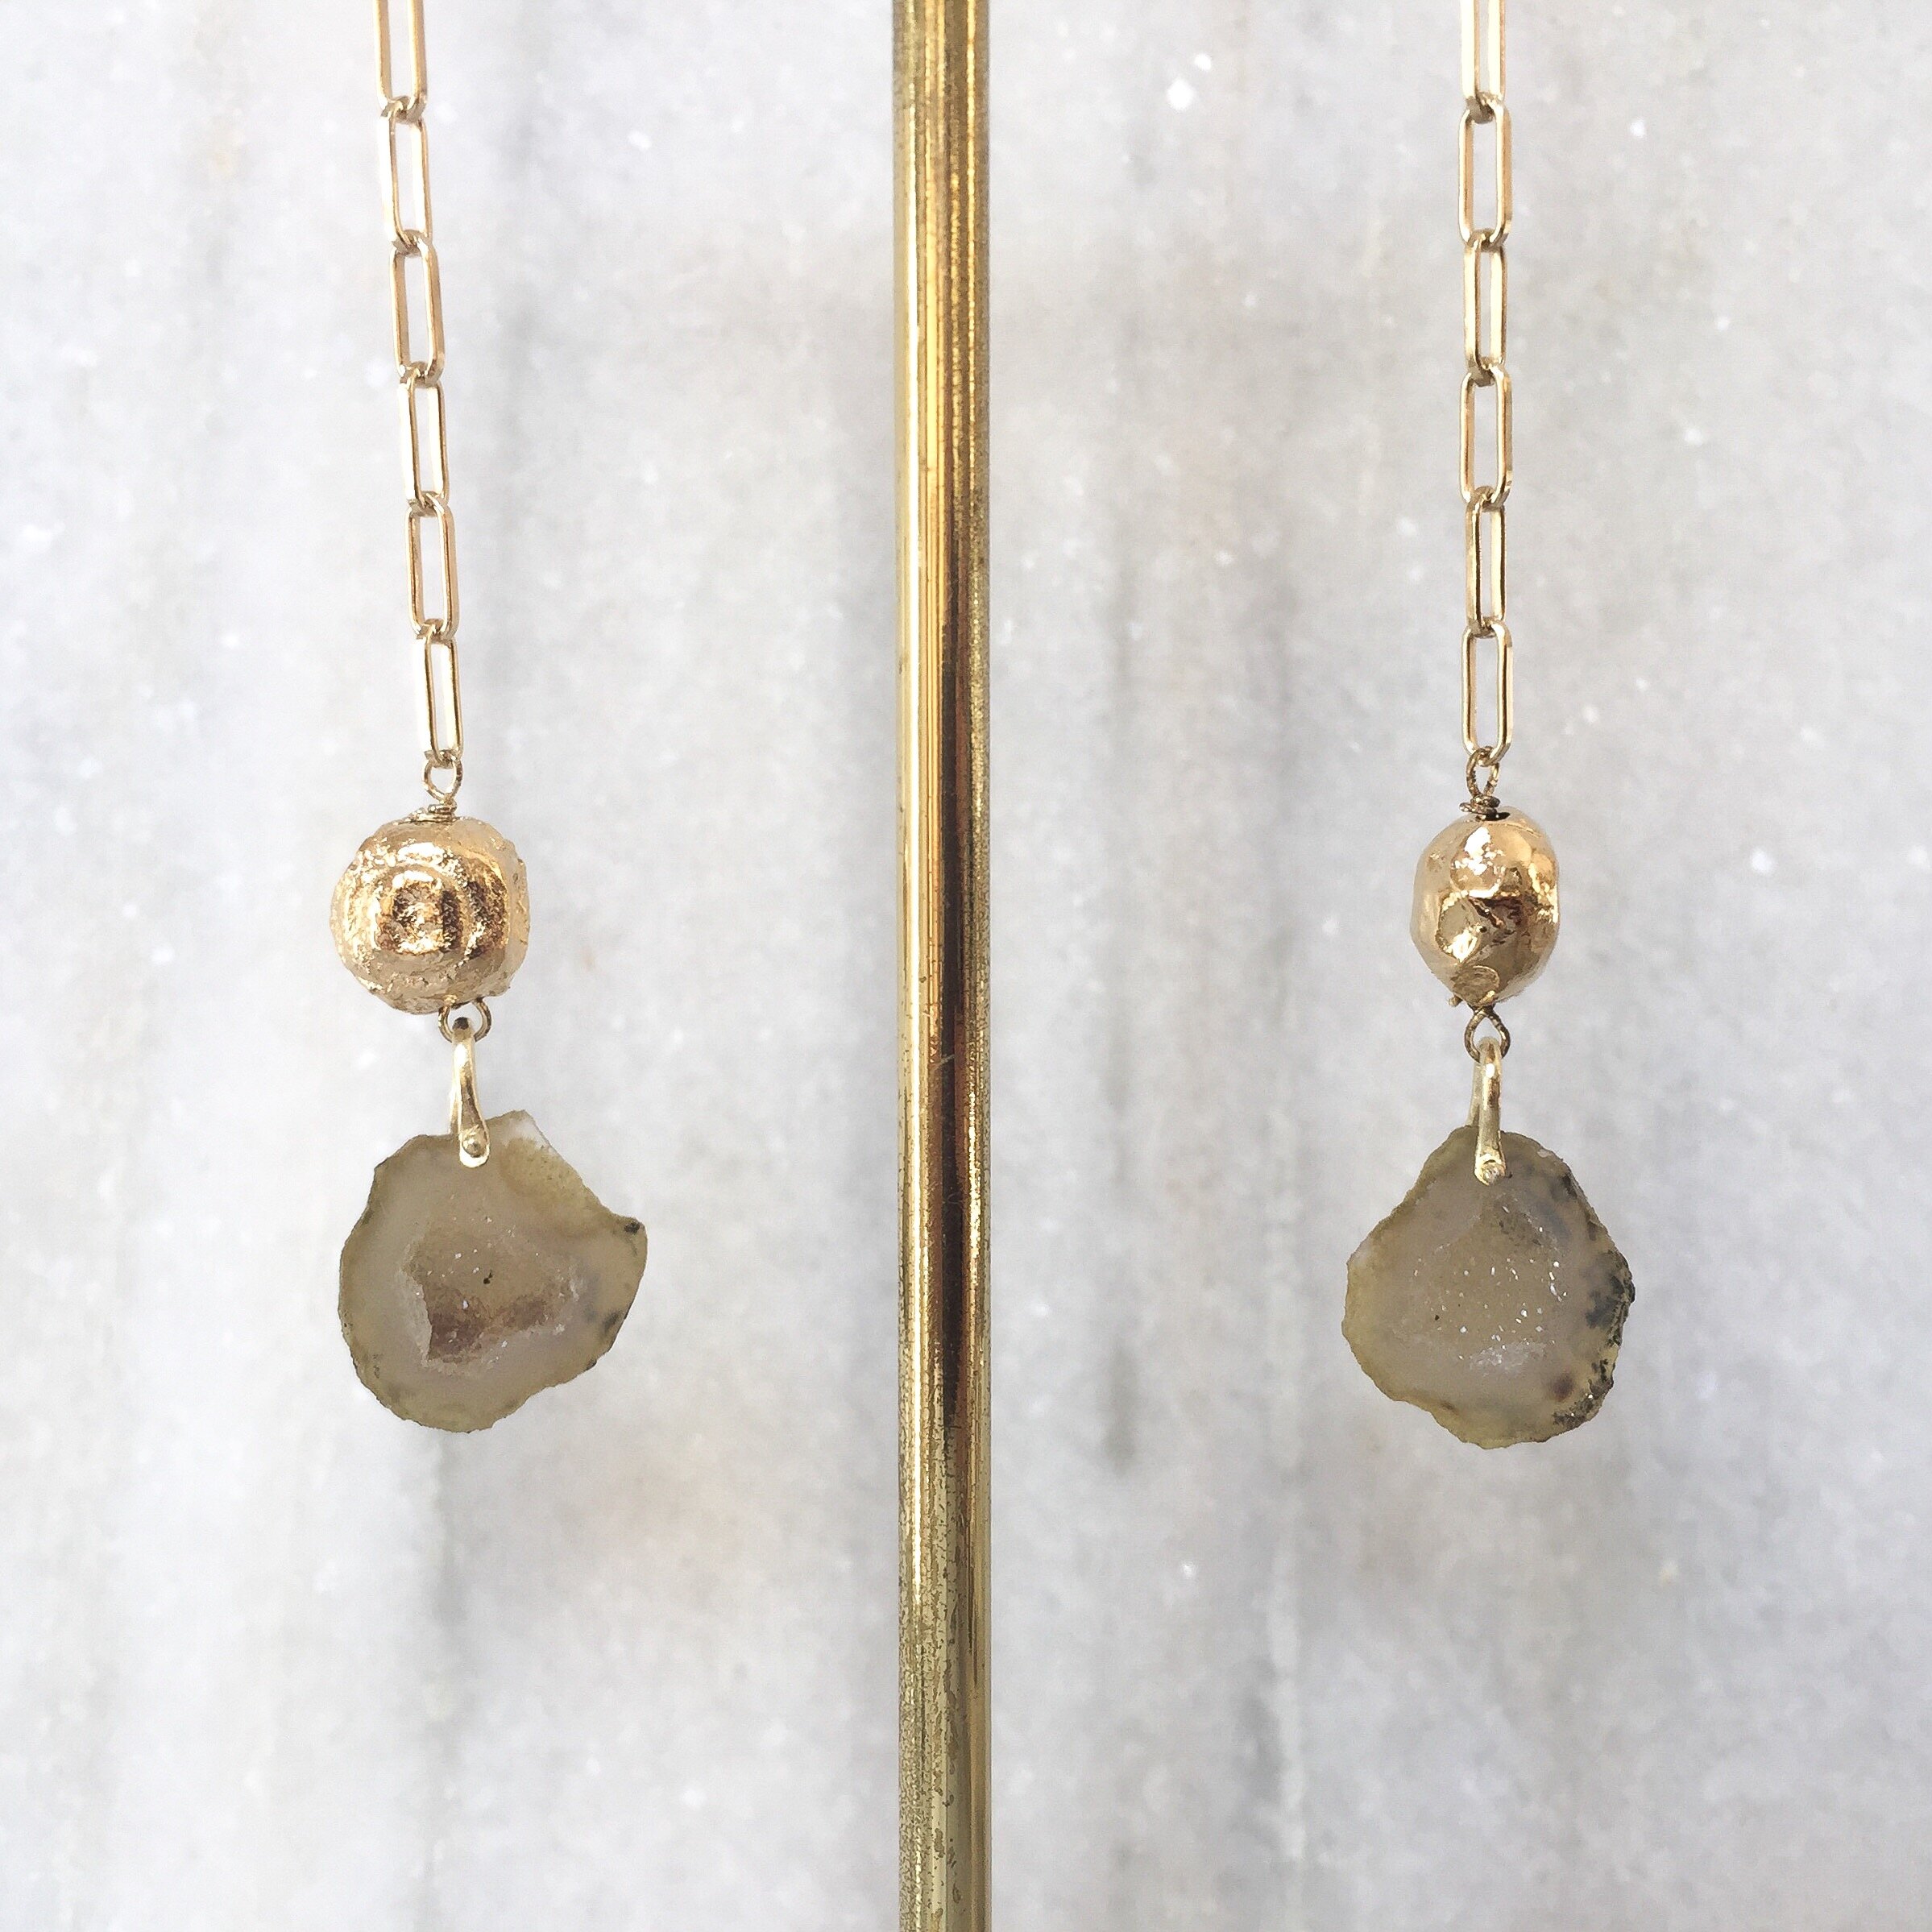 Gemstone earrings Very dark blue agate earrings Small romantic earrings Victorian earrings Brass earrings Edwardian earrings